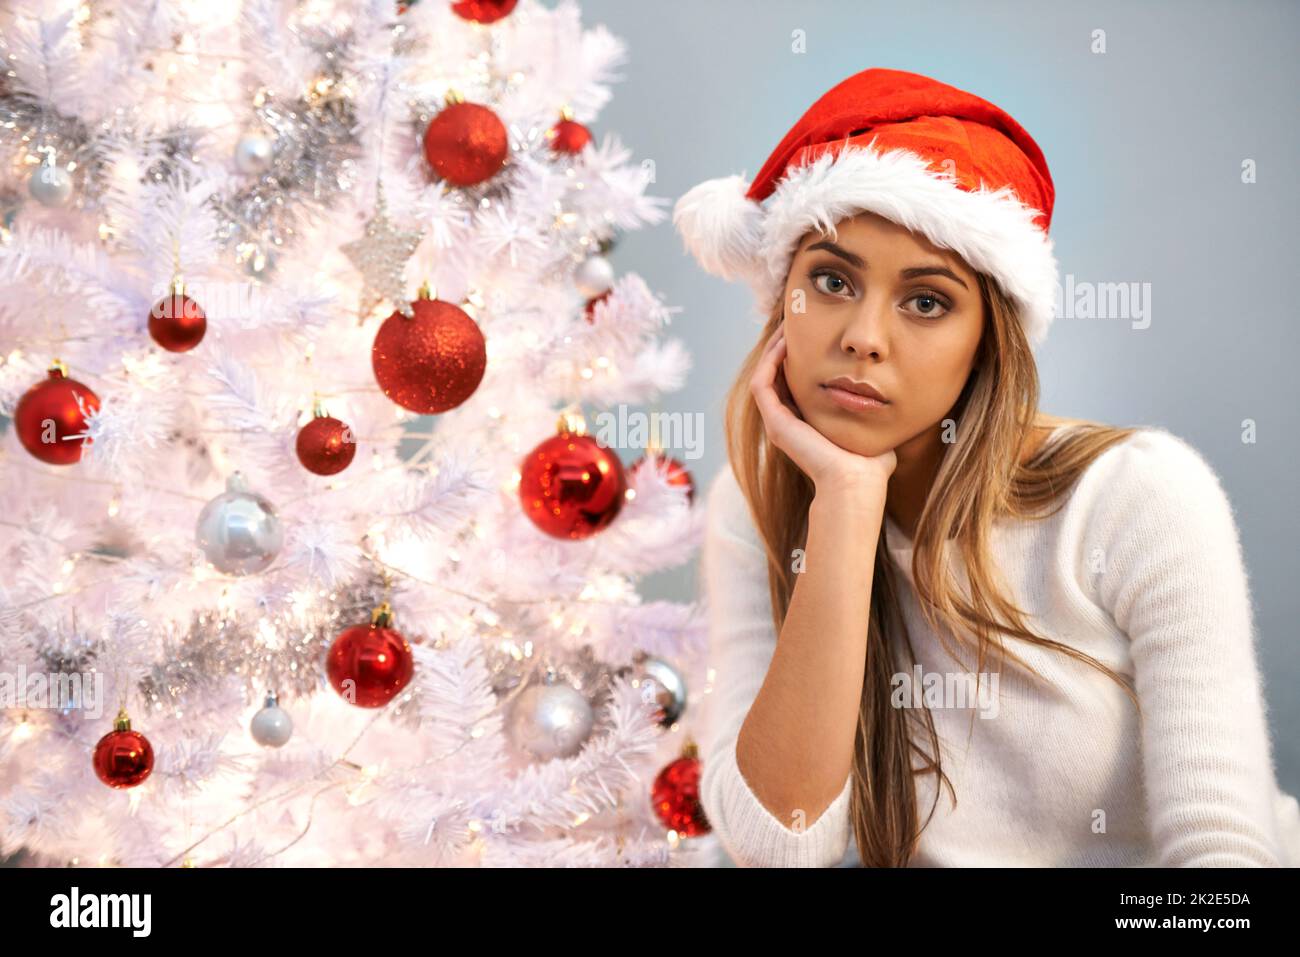 Ich fühle mich dieses Weihnachten einsam. Porträt einer schönen jungen Frau, die traurig aussieht, während sie allein an einem Weihnachtsbaum sitzt. Stockfoto